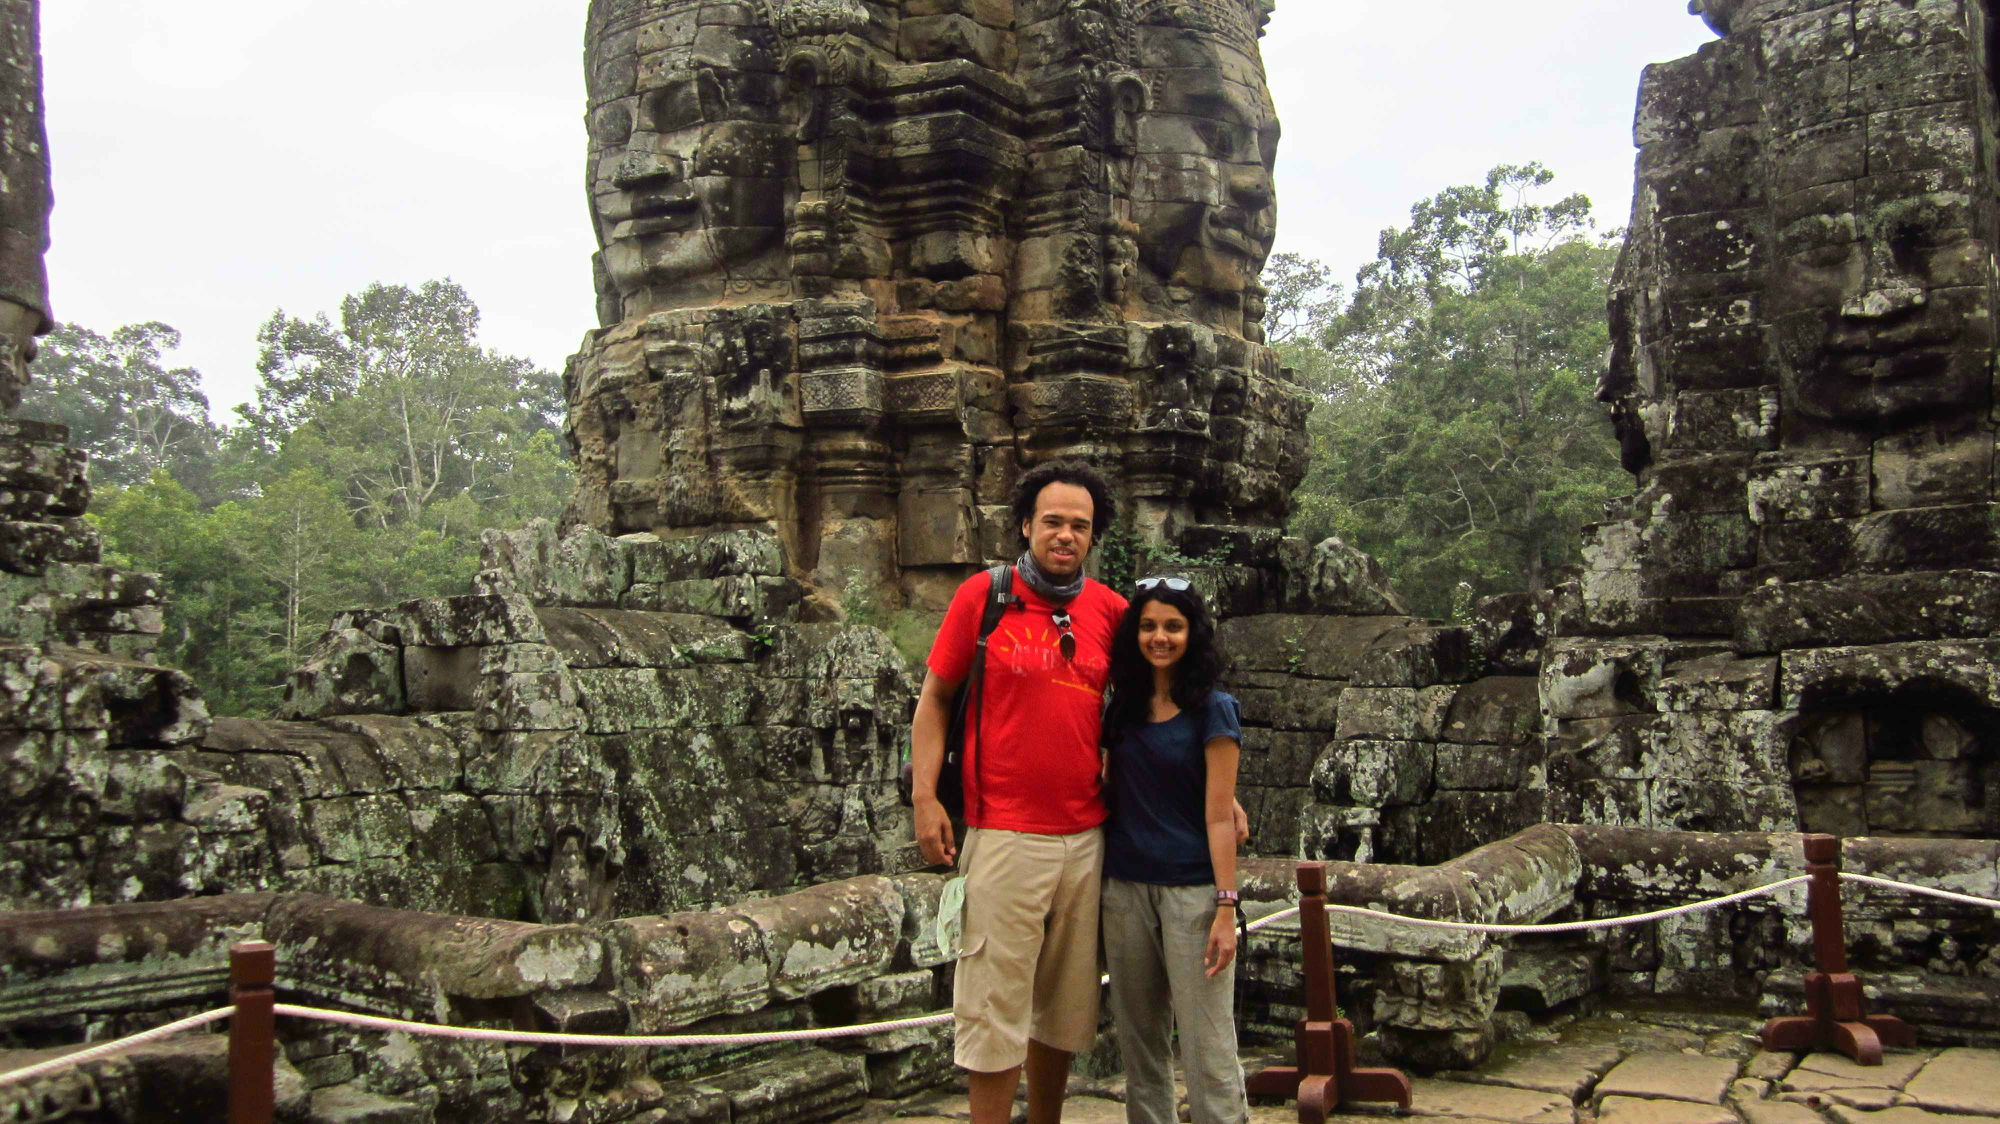 At Bayon, Angkor Thom